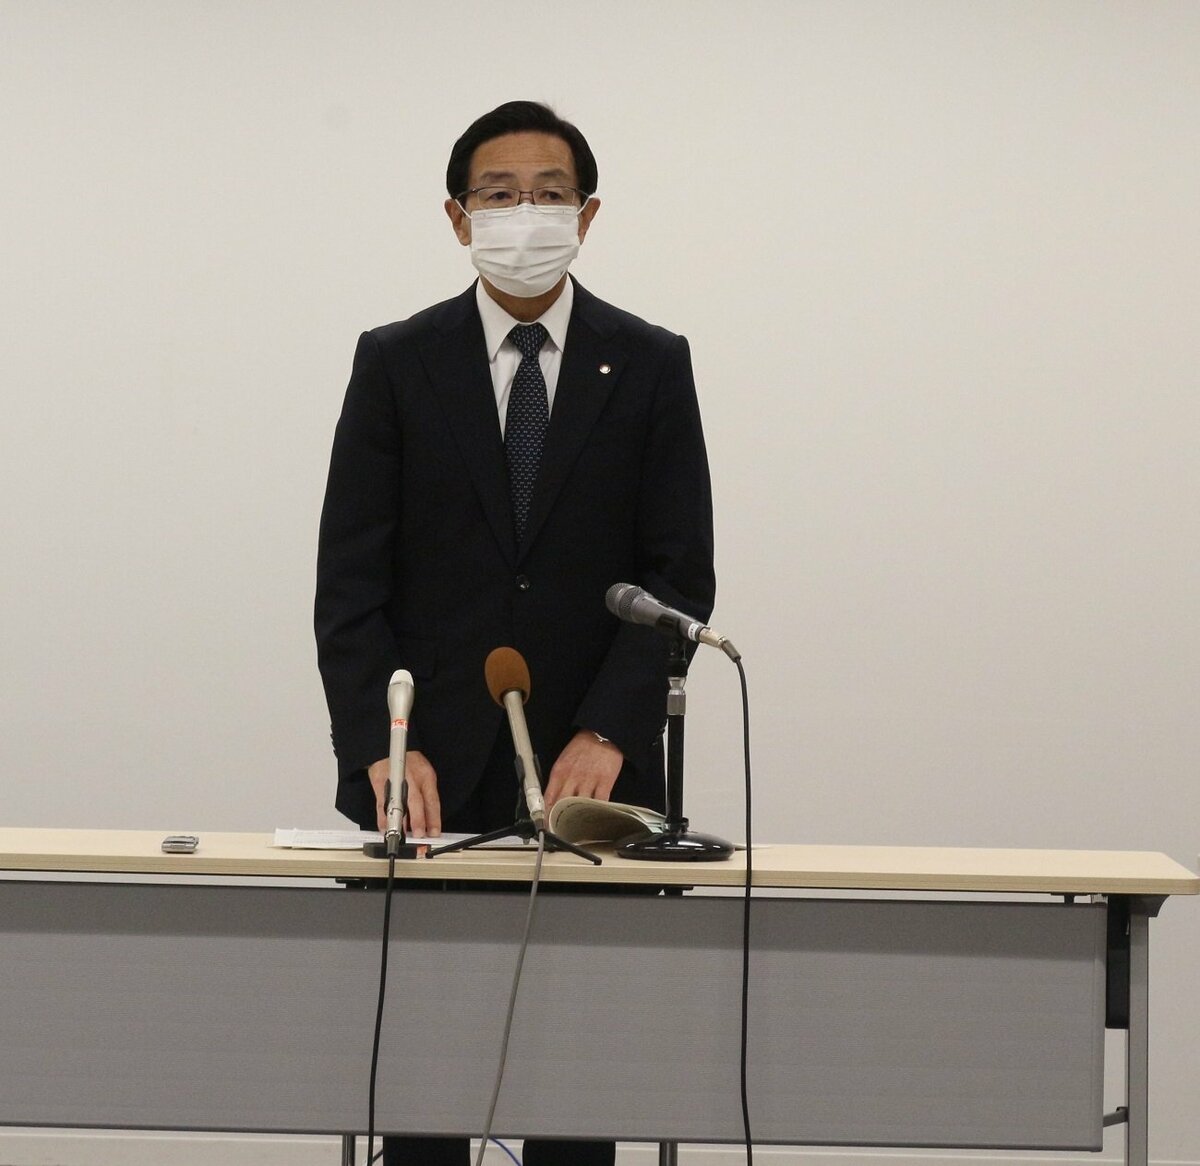 コロナ感染で自宅待機の女性死亡、京都府知事と京都市長「お悔やみ申し上げる」